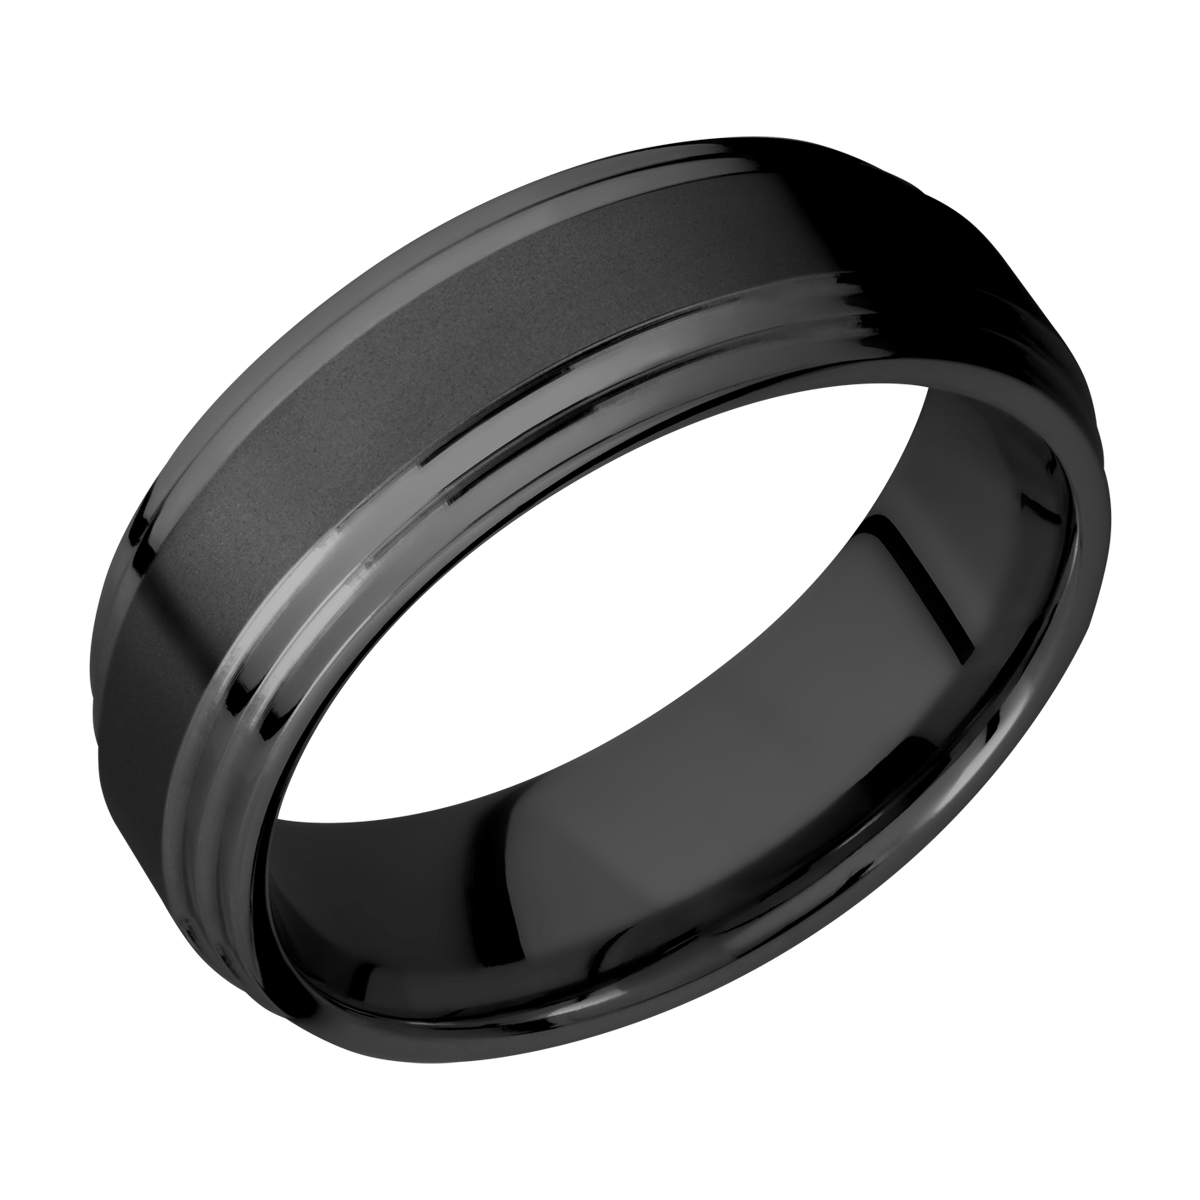 Lashbrook Z8F2S Zirconium Wedding Ring or Band